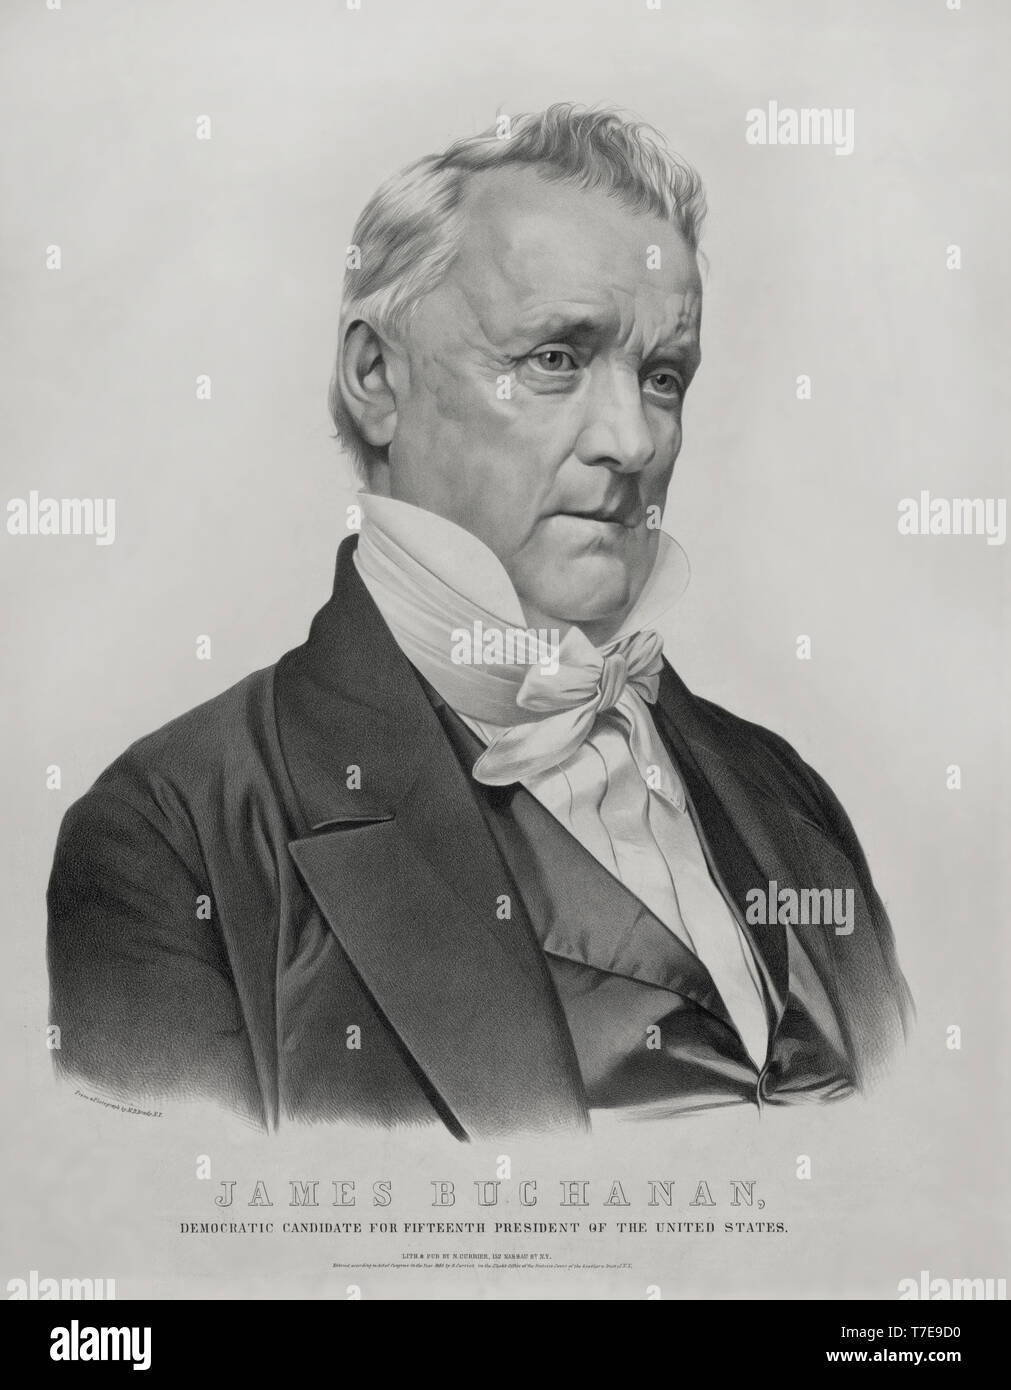 James Buchanan, der demokratische Kandidat für 15. Präsident der Vereinigten Staaten, Lithographie & durch Nathaniel Currier, 1856 veröffentlicht. Stockfoto